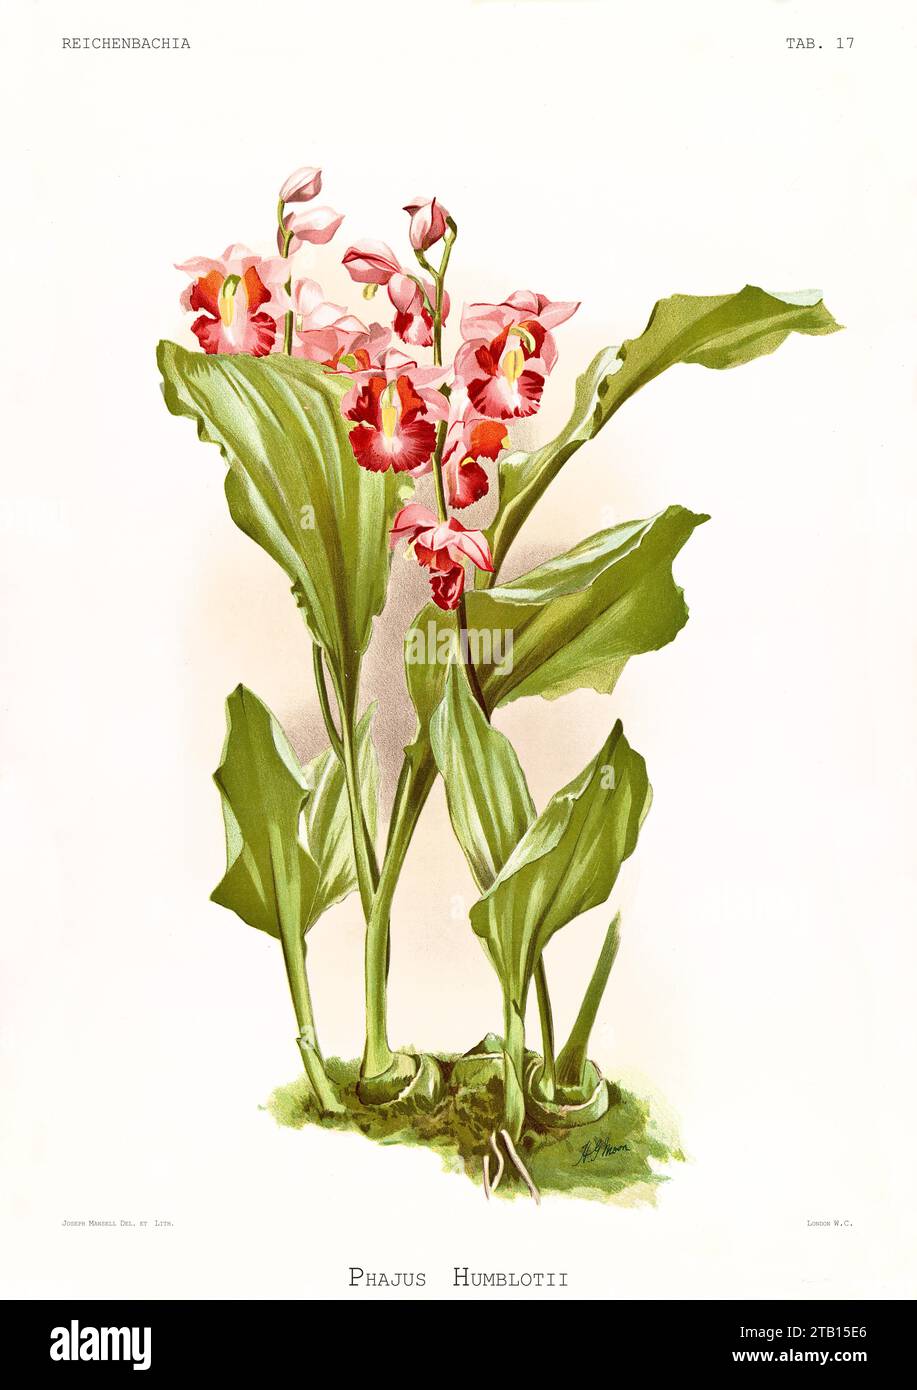 Illustration ancienne du Phaius de Humblot (Gastrorchis humblotii). Reichenbachia, de F. Sander. St. Albans, Royaume-Uni, 1888 - 1894 Banque D'Images